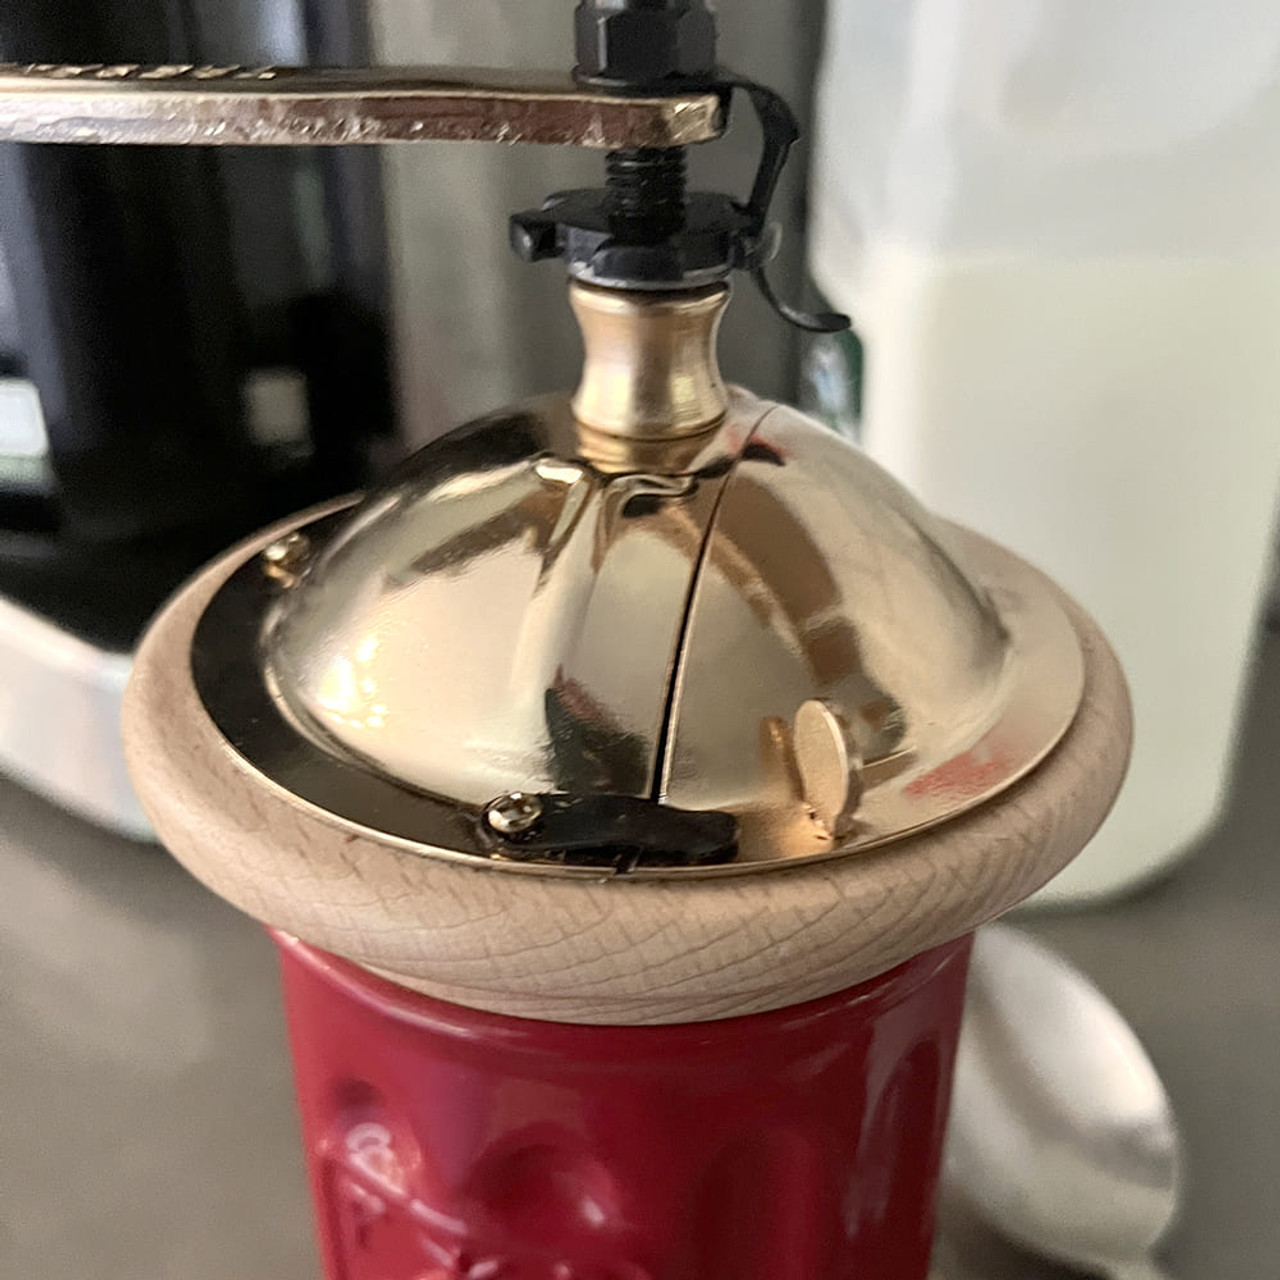 Standard Ceramic Coffee Mill